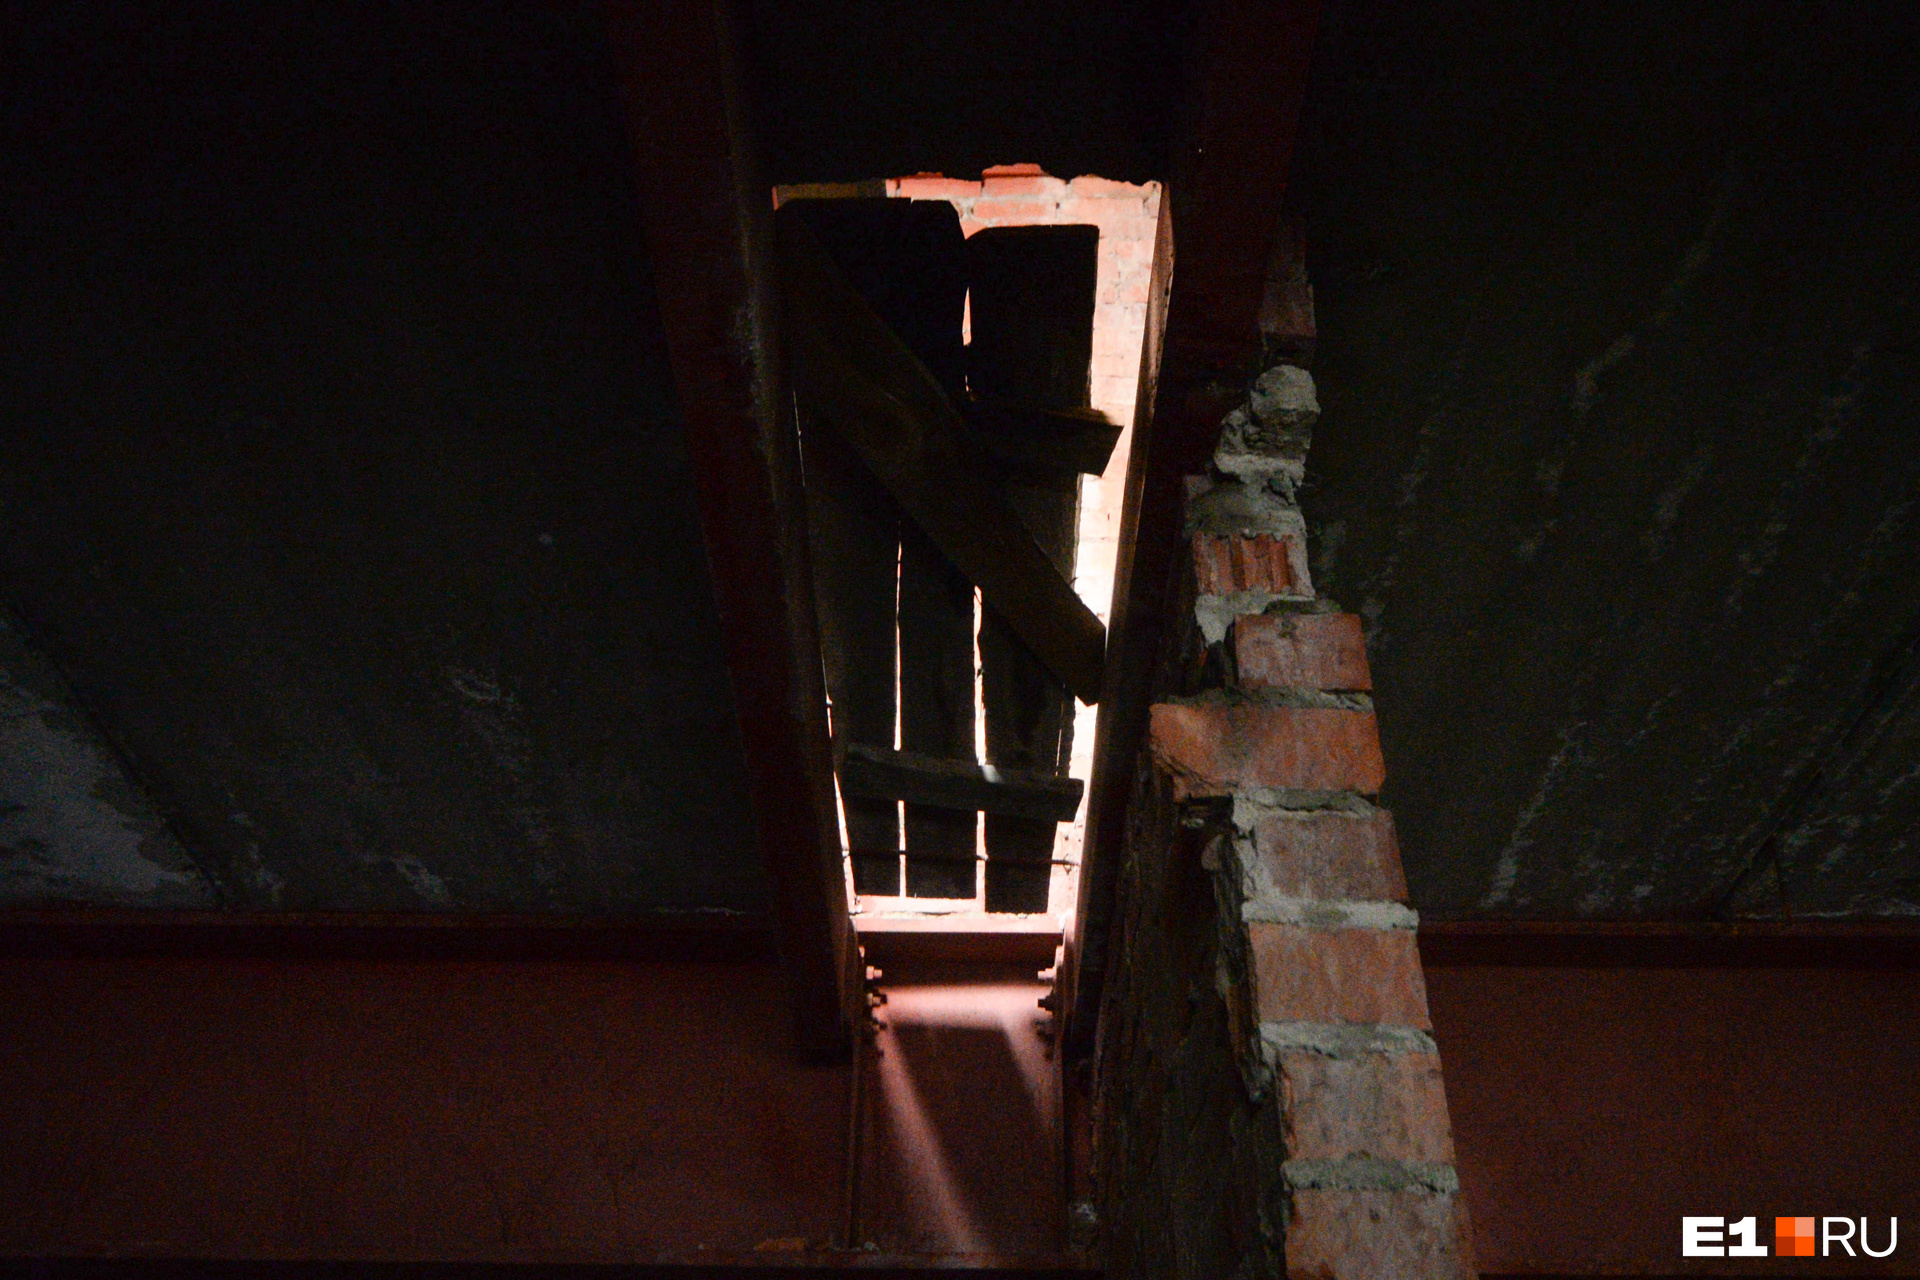 Те самые деревянные перекрытия в потолке, через которые капает вода. Они есть на каждом этаже